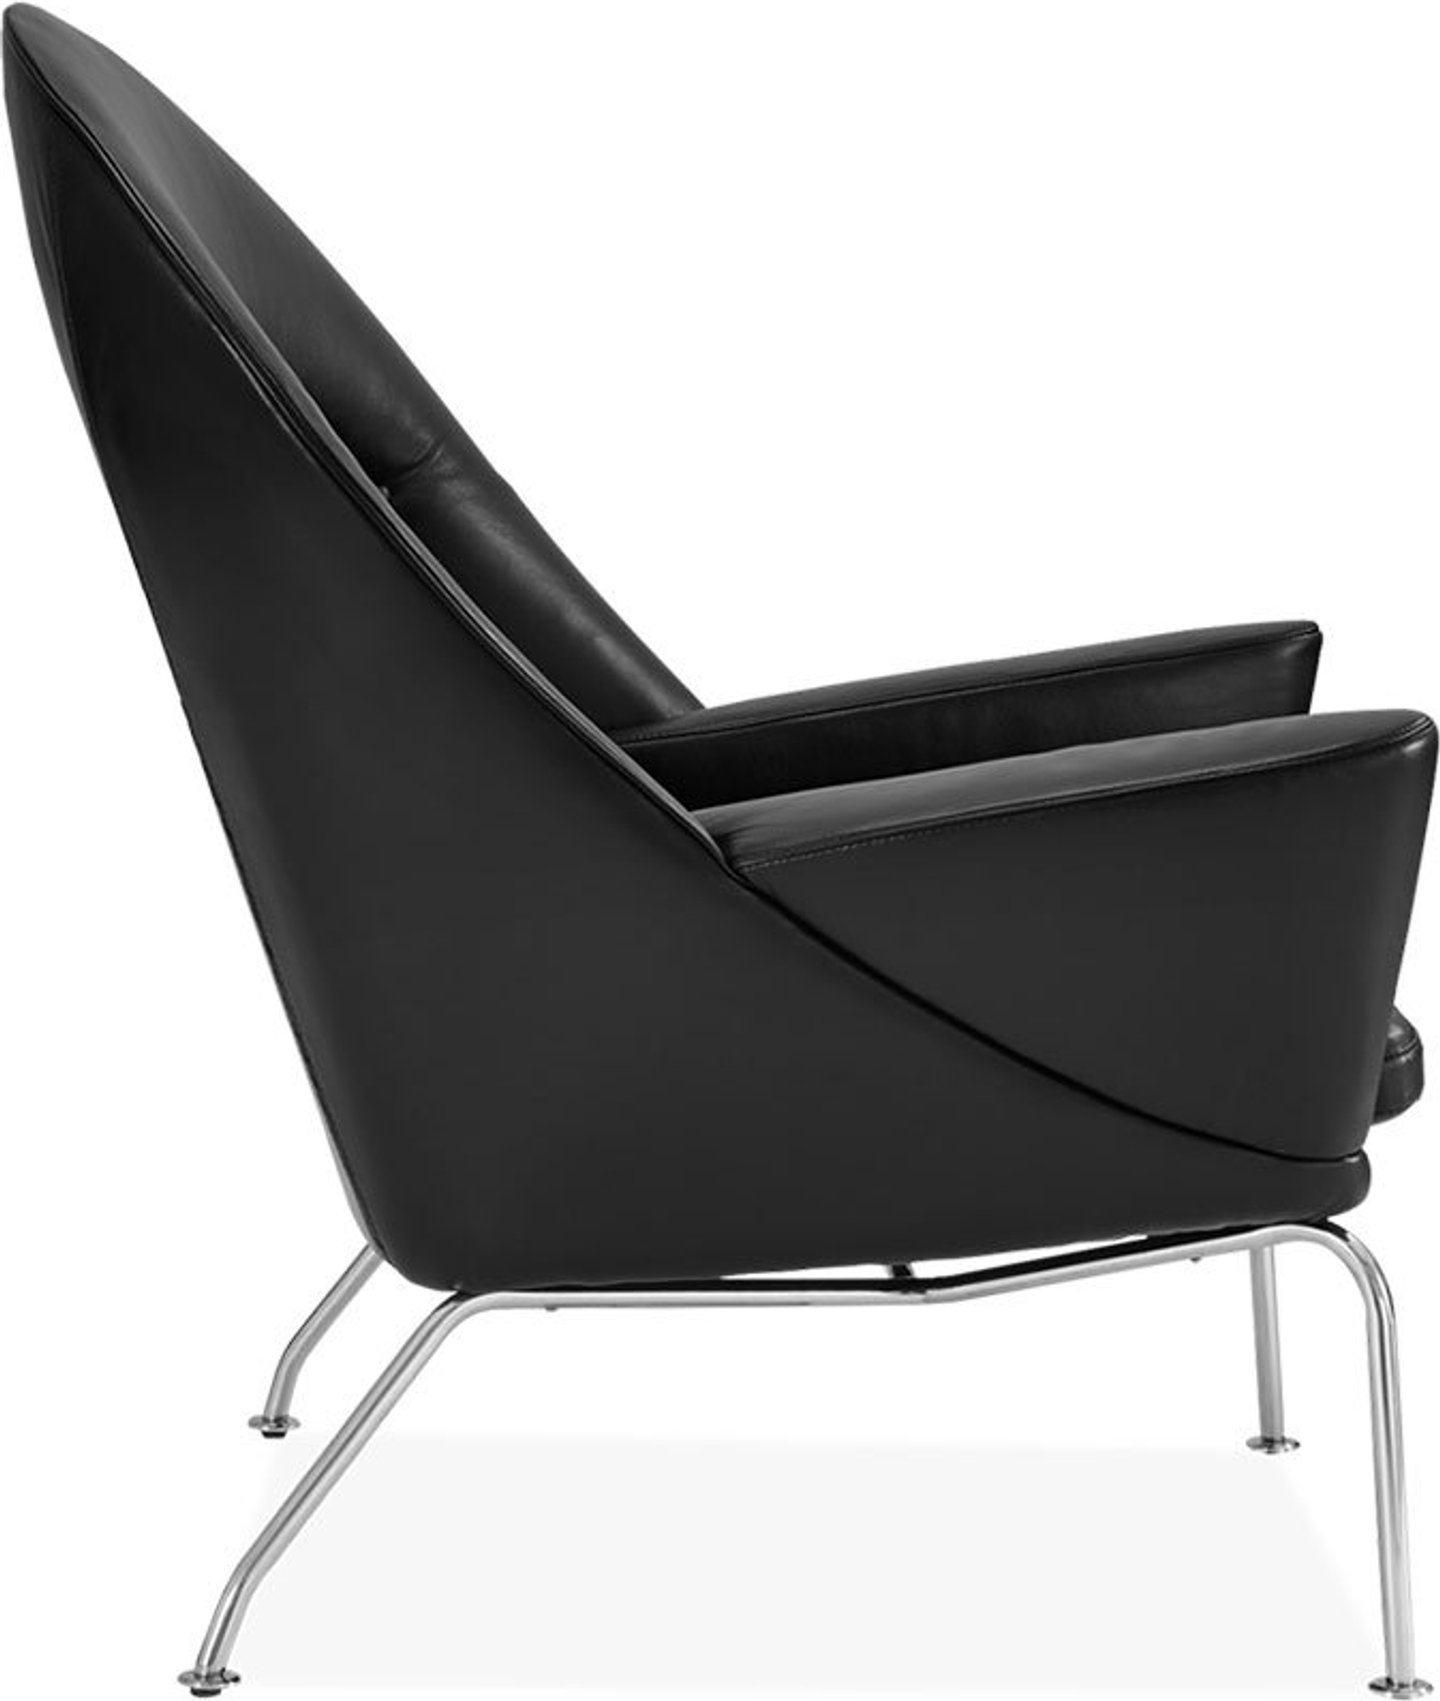 Oculus Chair Premium Leather/Black  image.